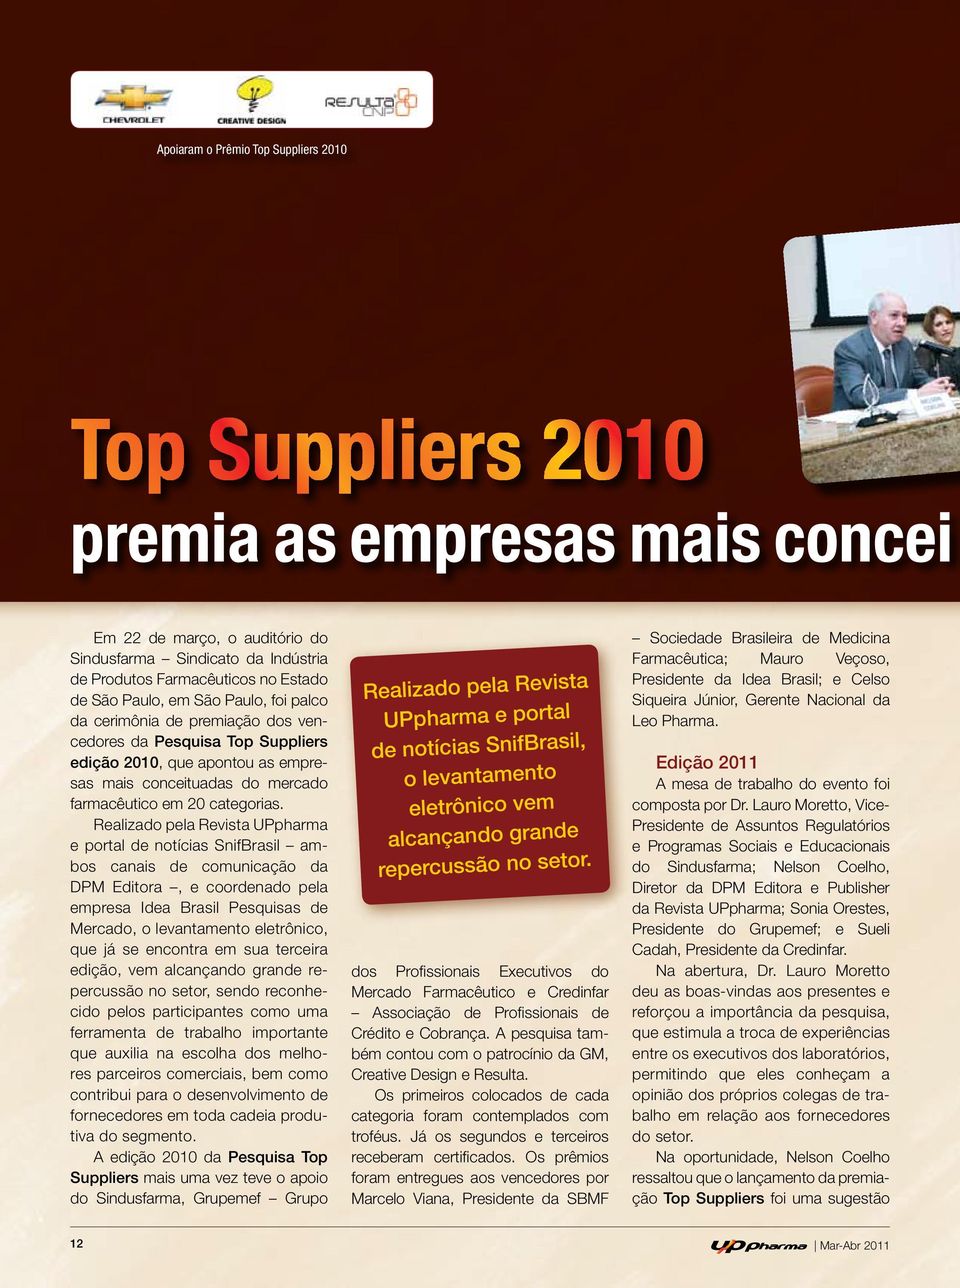 Realizado pela Revista UPpharma e portal de notícias SnifBrasil ambos canais de comunicação da DPM Editora, e coordenado pela empresa Idea Brasil Pesquisas de Mercado, o levantamento eletrônico, que